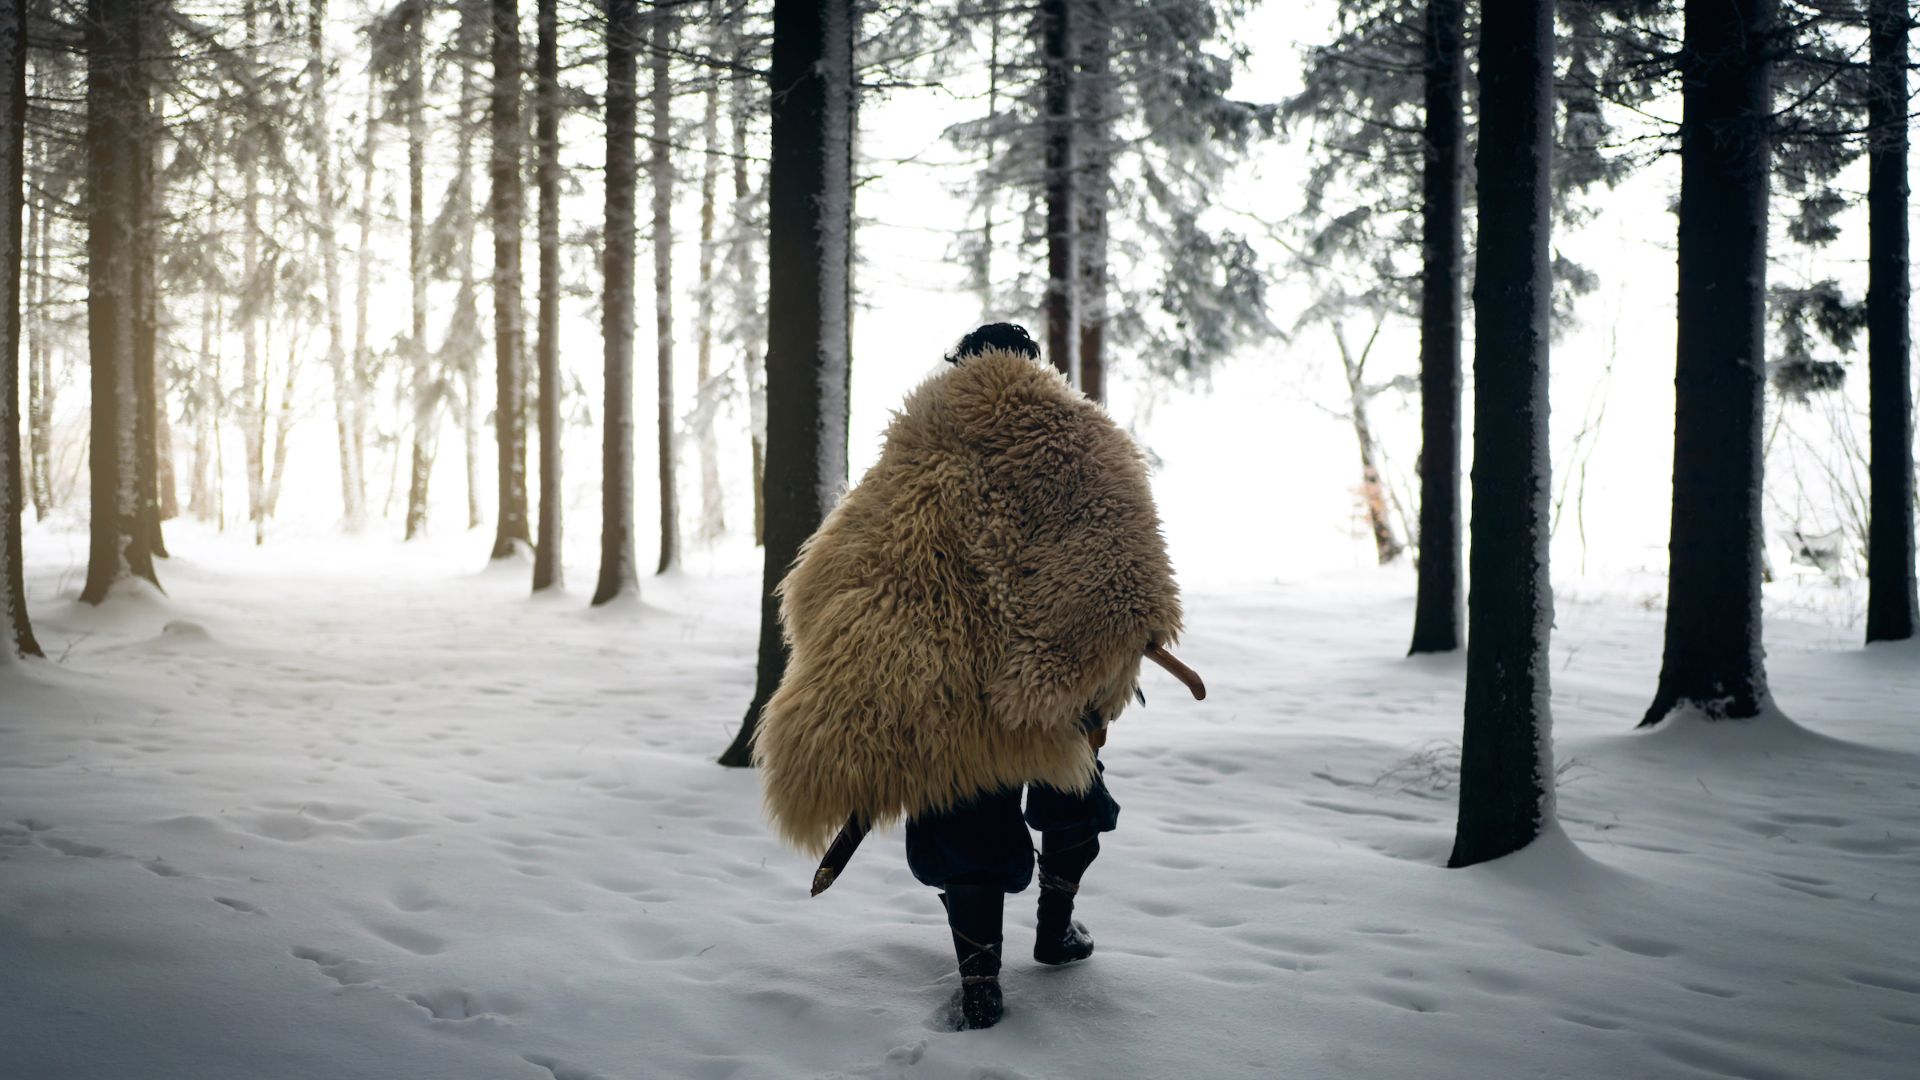 انسان اولیه با پوشش خز در میان جنگل برفی